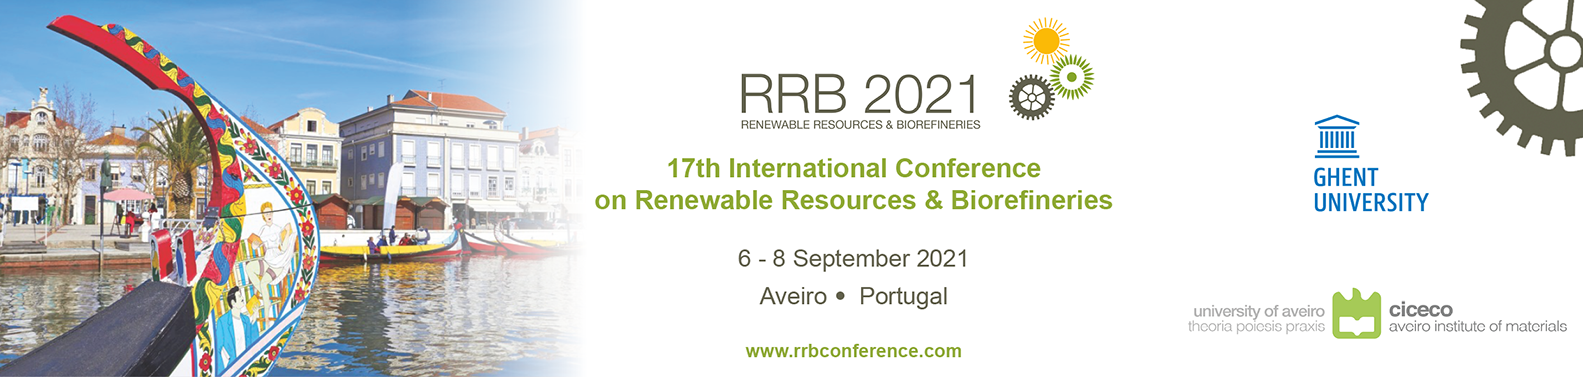 RRB 2021 registration